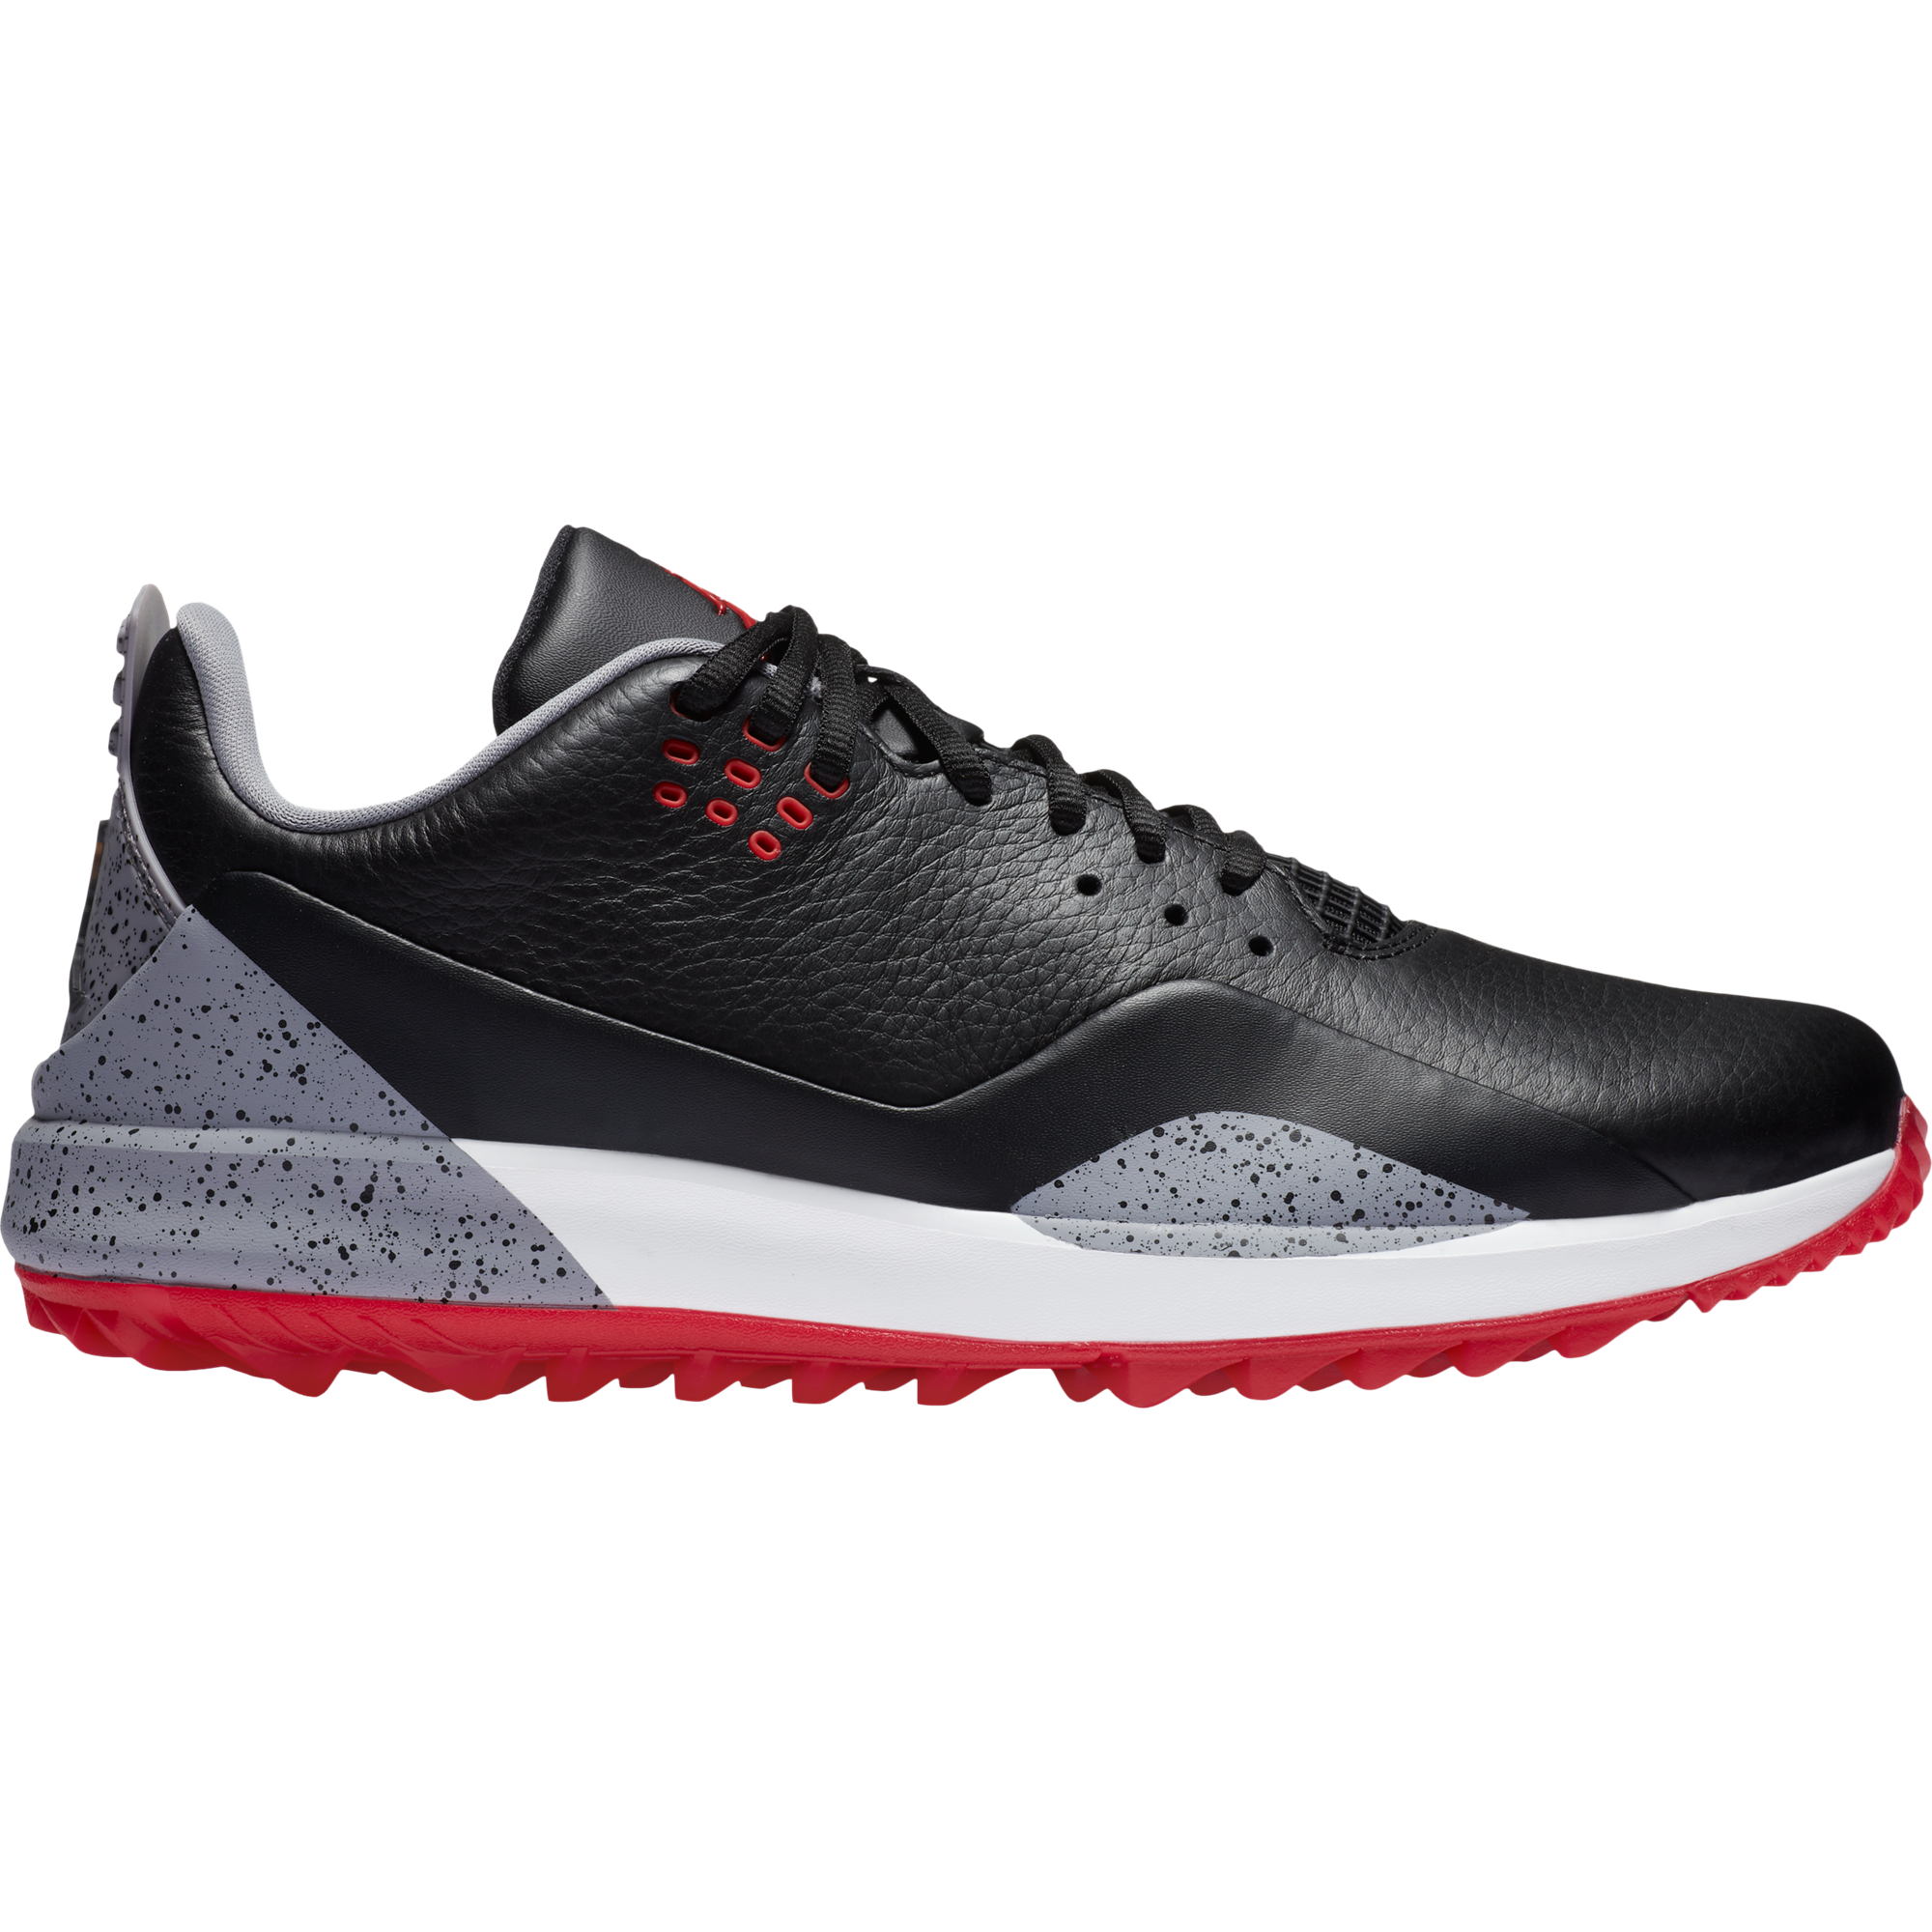 Air Jordan ADG 3 Spikeless Golf Shoe 